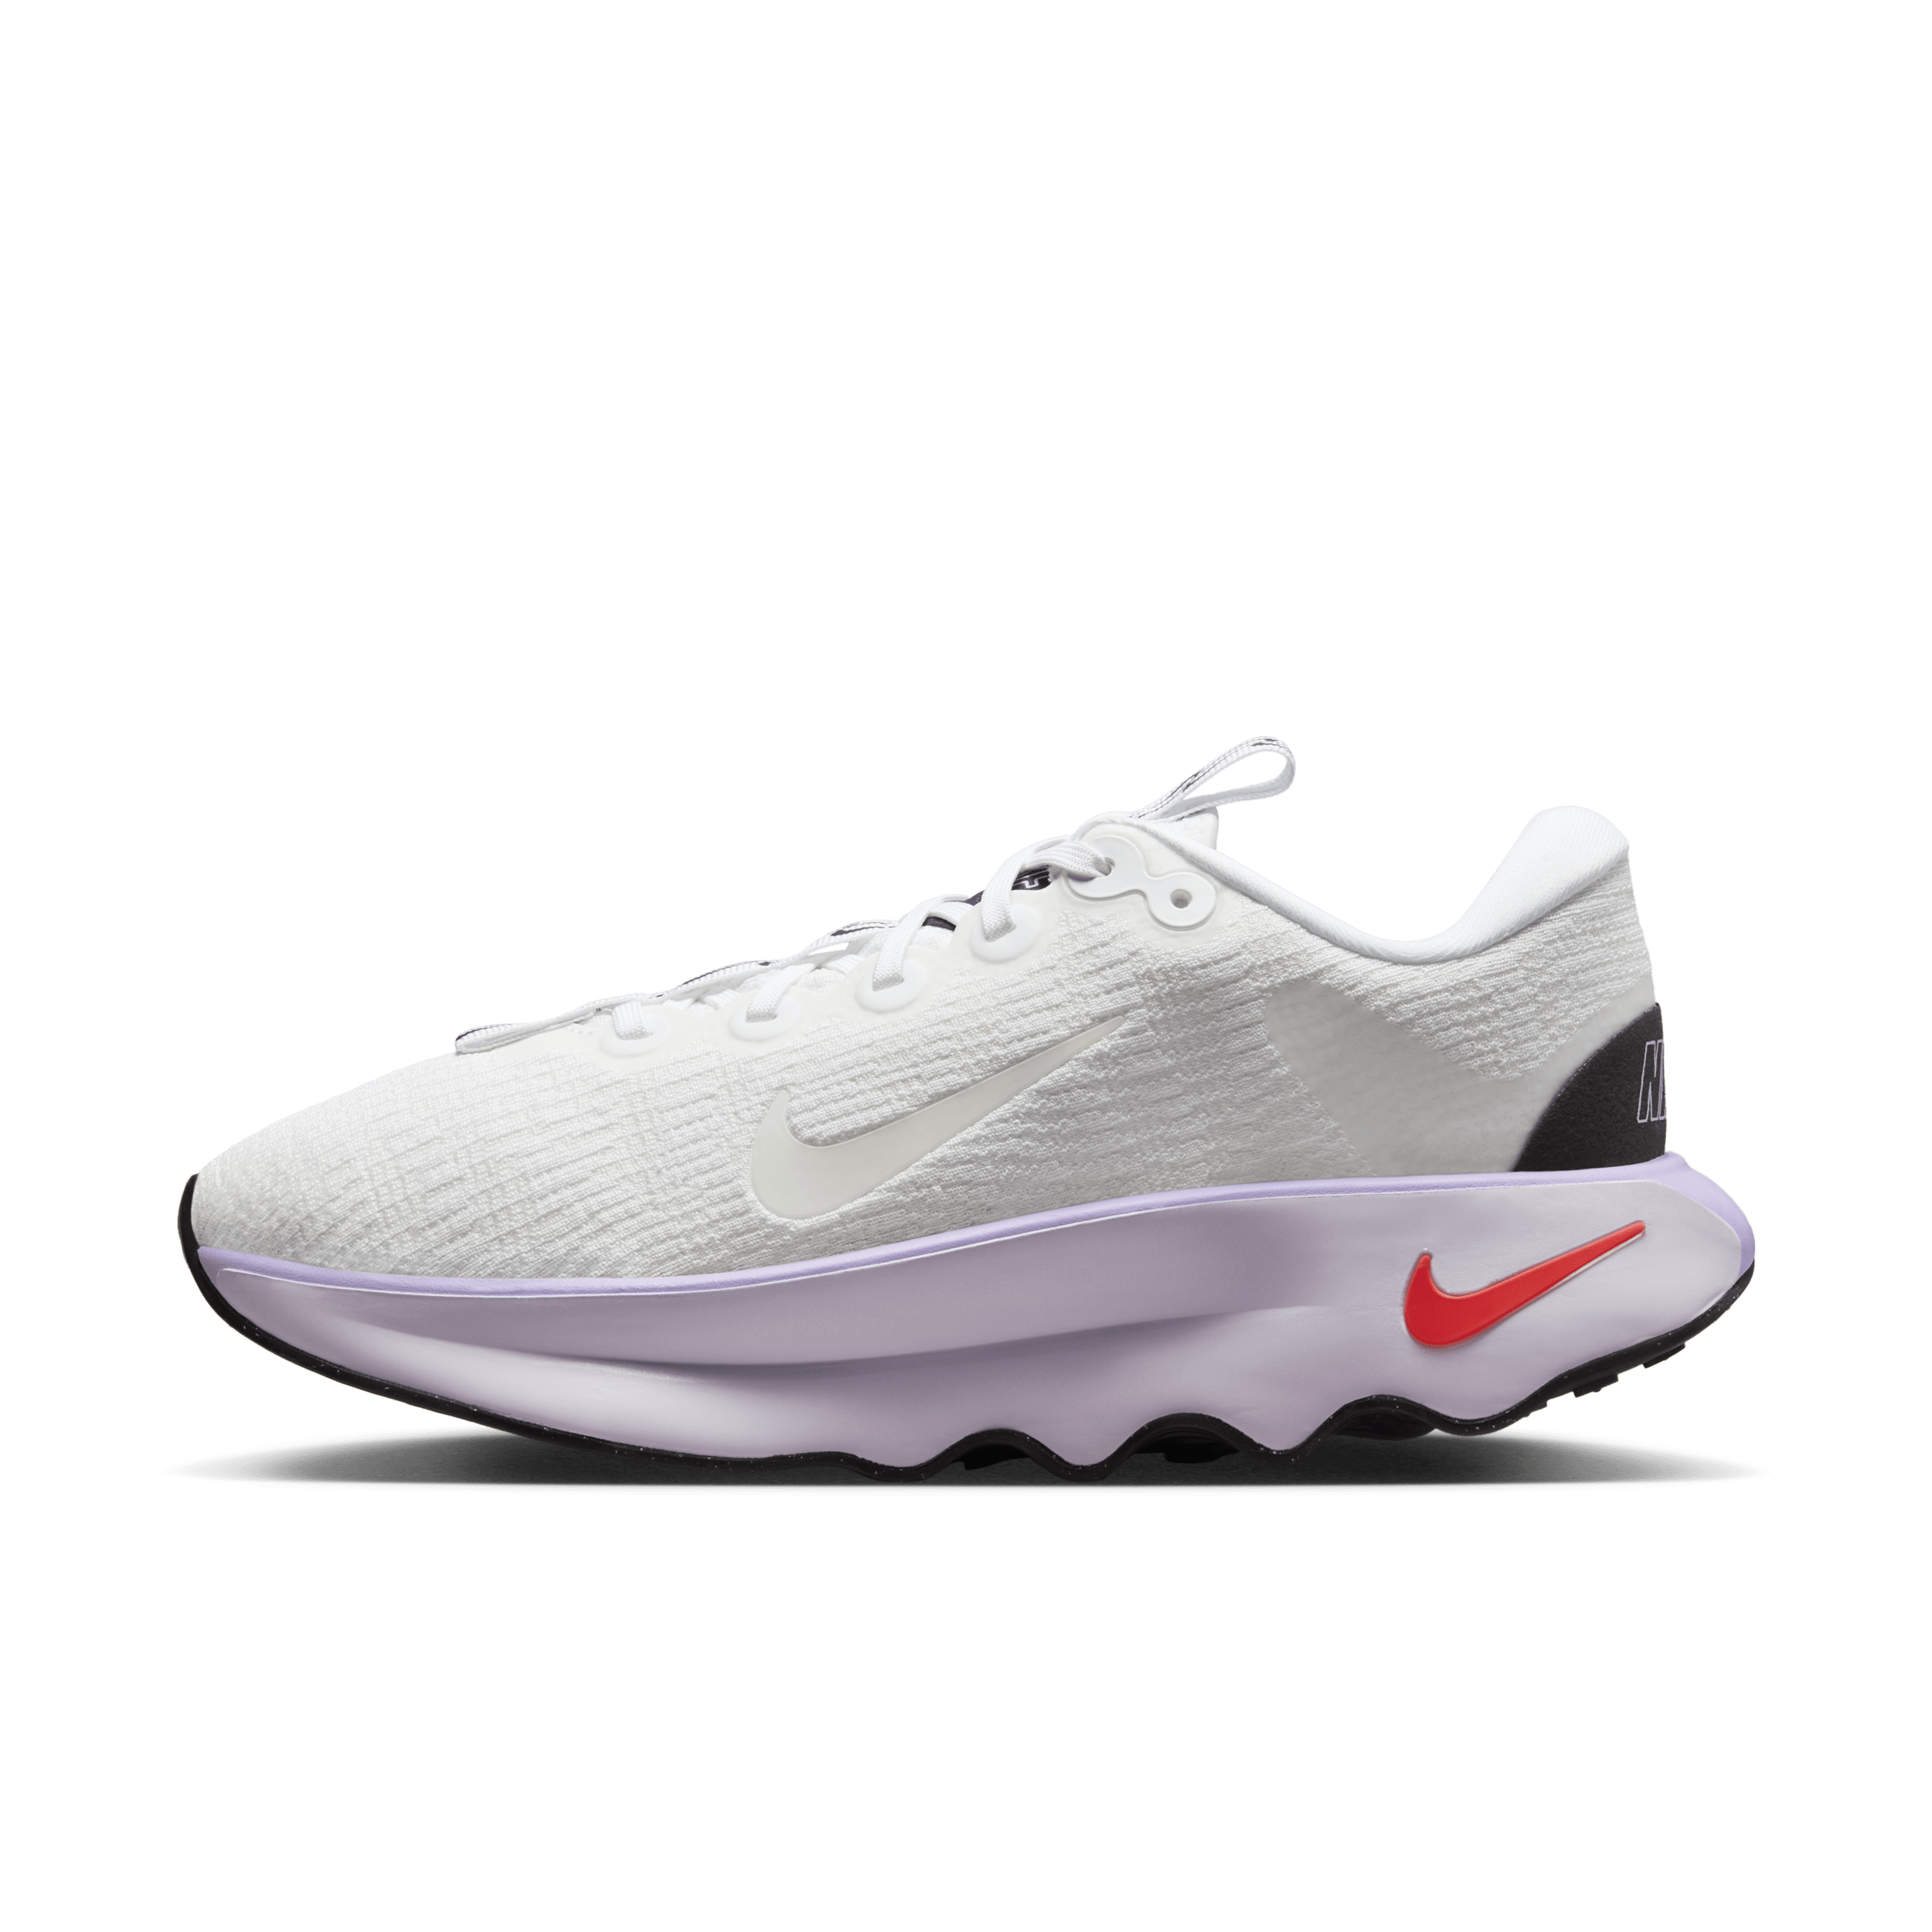 Chaussure de marche Nike Motiva pour femme - Blanc